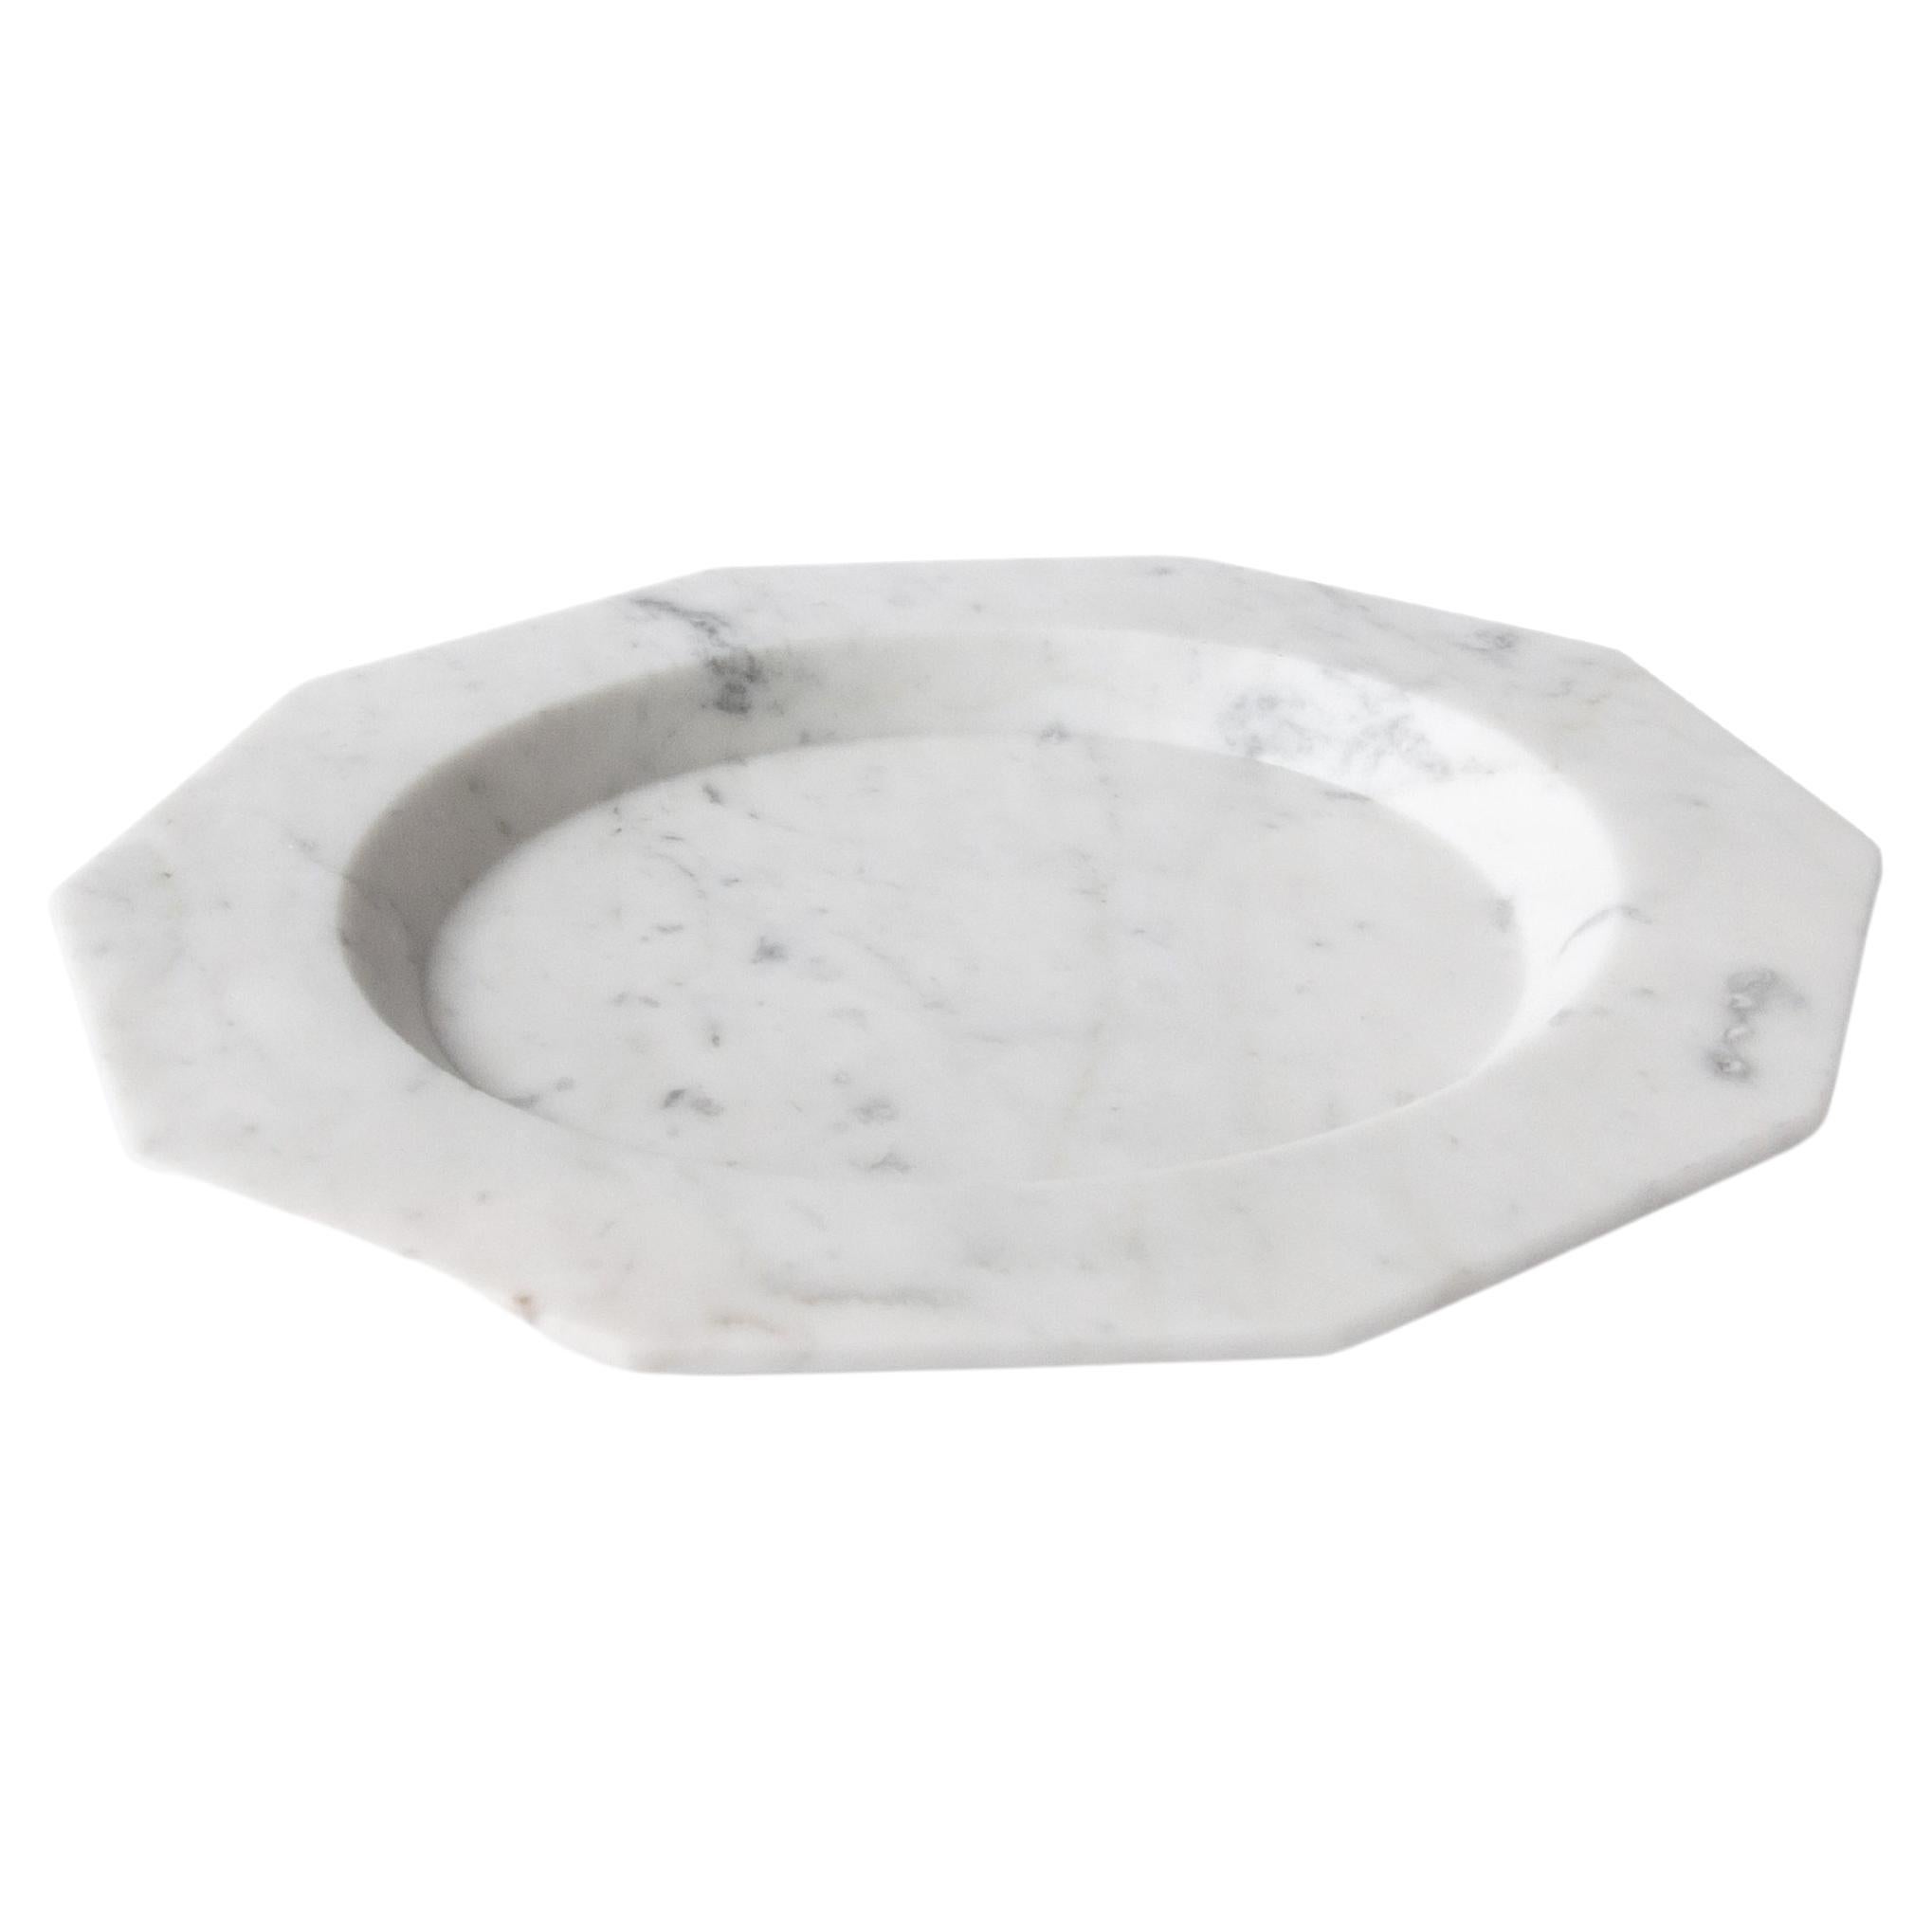 Handmade Dinner Plate in Satin White Carrara Marble